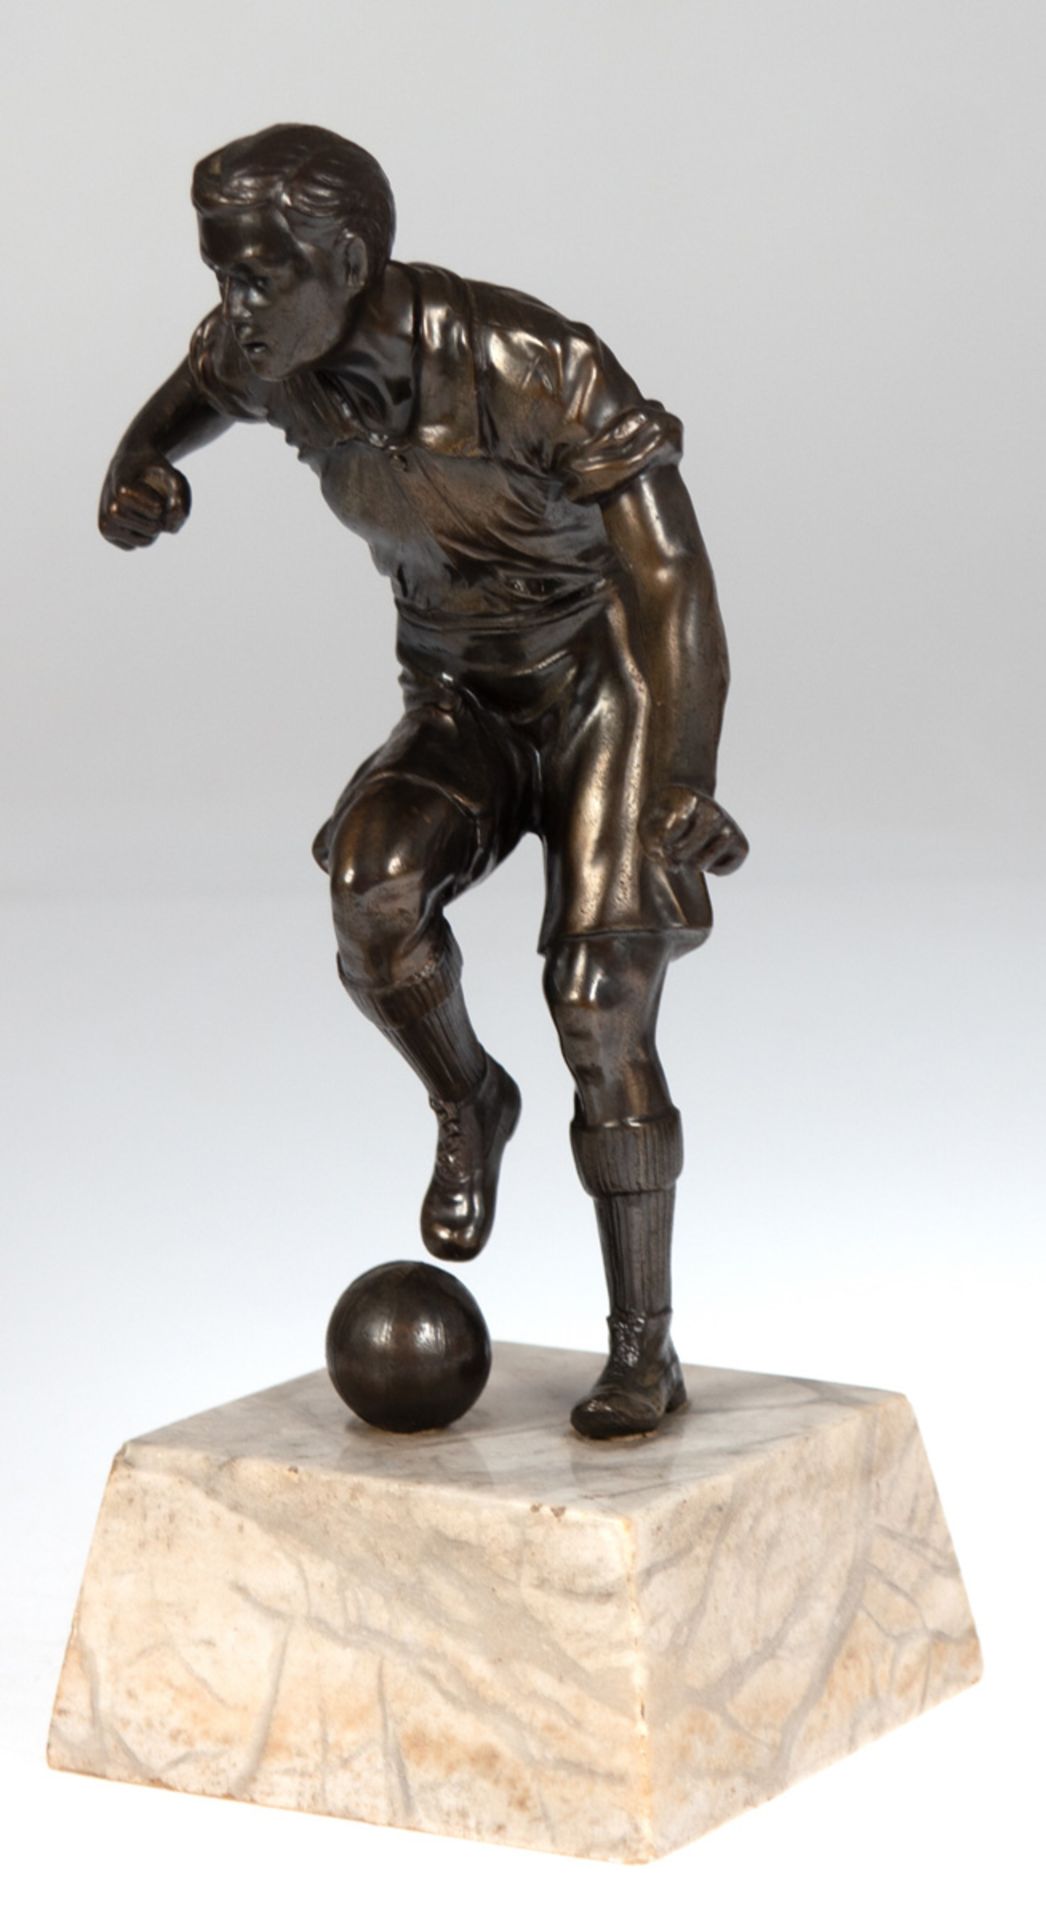 Skulptur "Fußballspieler", Bronze, grün patiniert, auf hellem Marmorsockel, unsign., H. 26cm - Bild 2 aus 2